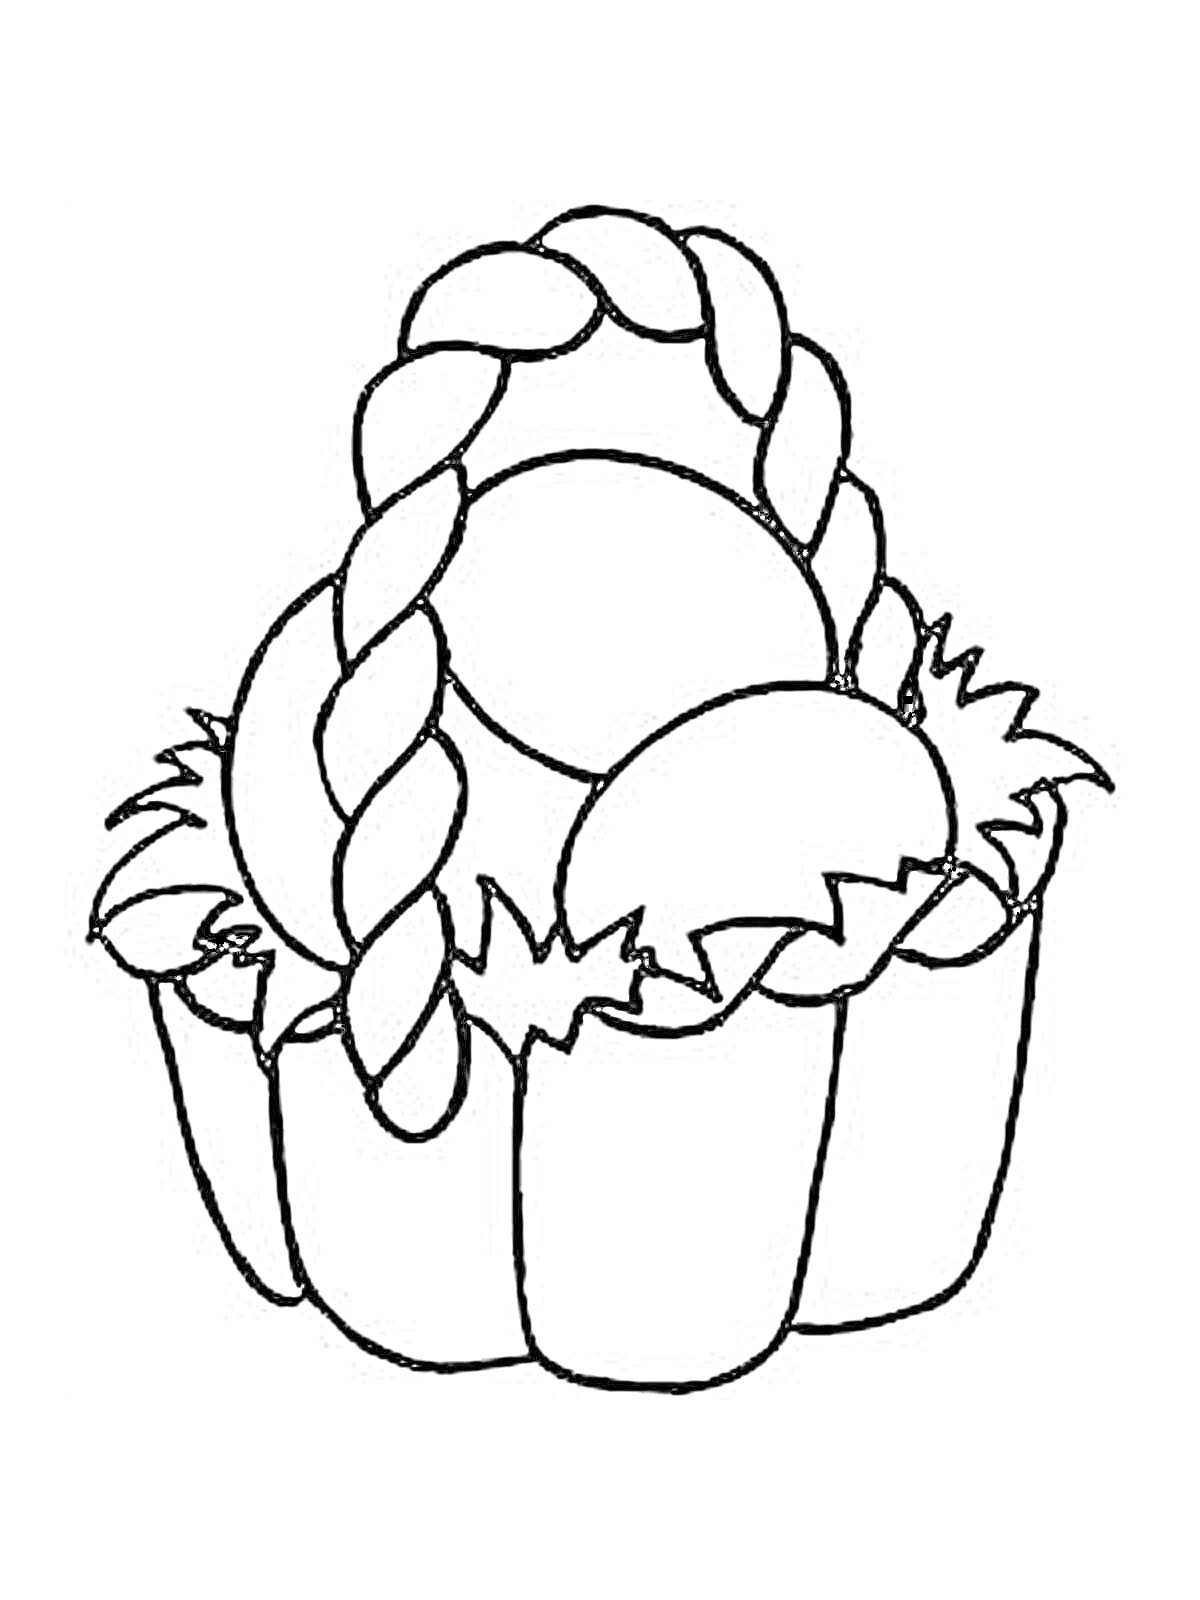 Раскраска Корзина для Пасхи с яйцами, ручкой и травой